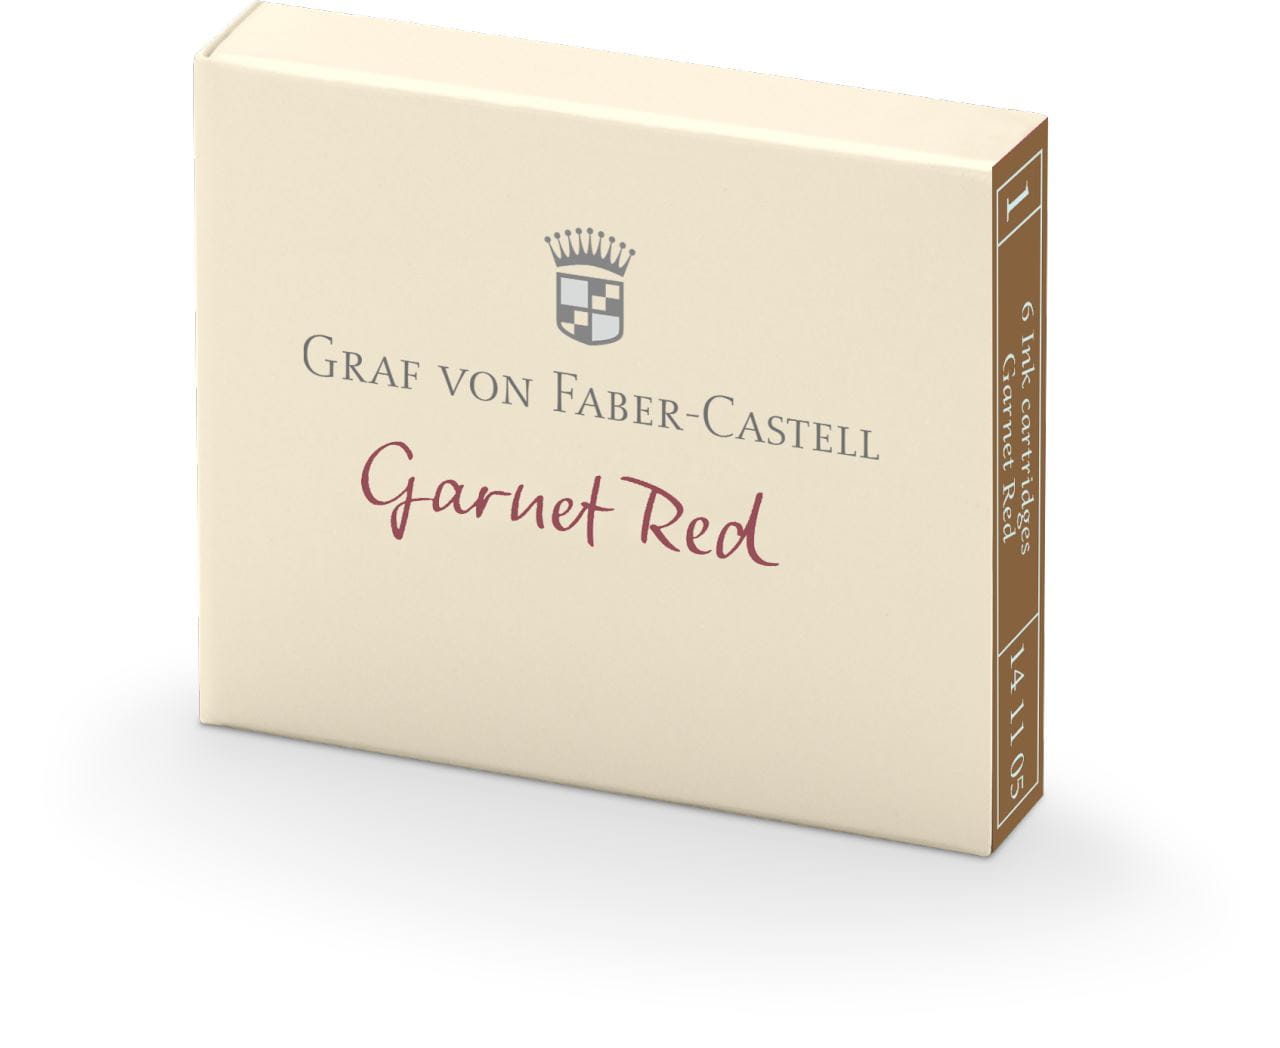 Graf-von-Faber-Castell - 6 cartuchos de tinta Garnet Red